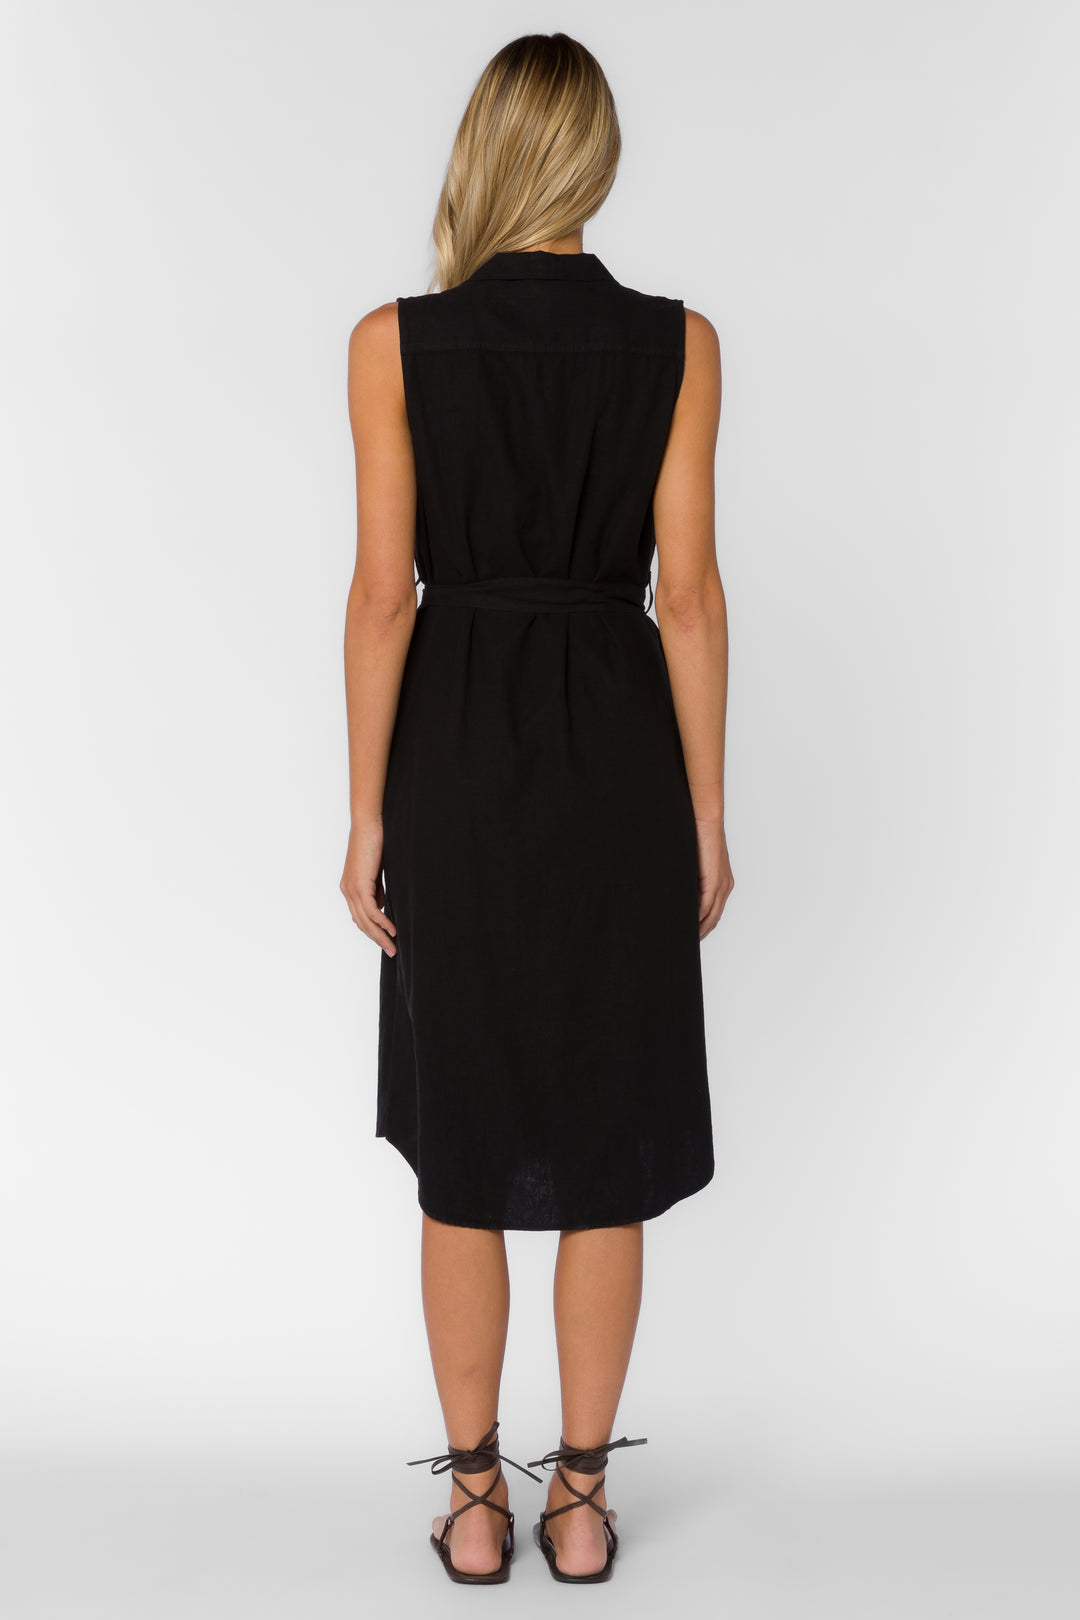 Batina Black Dress - Dresses - Velvet Heart Clothing